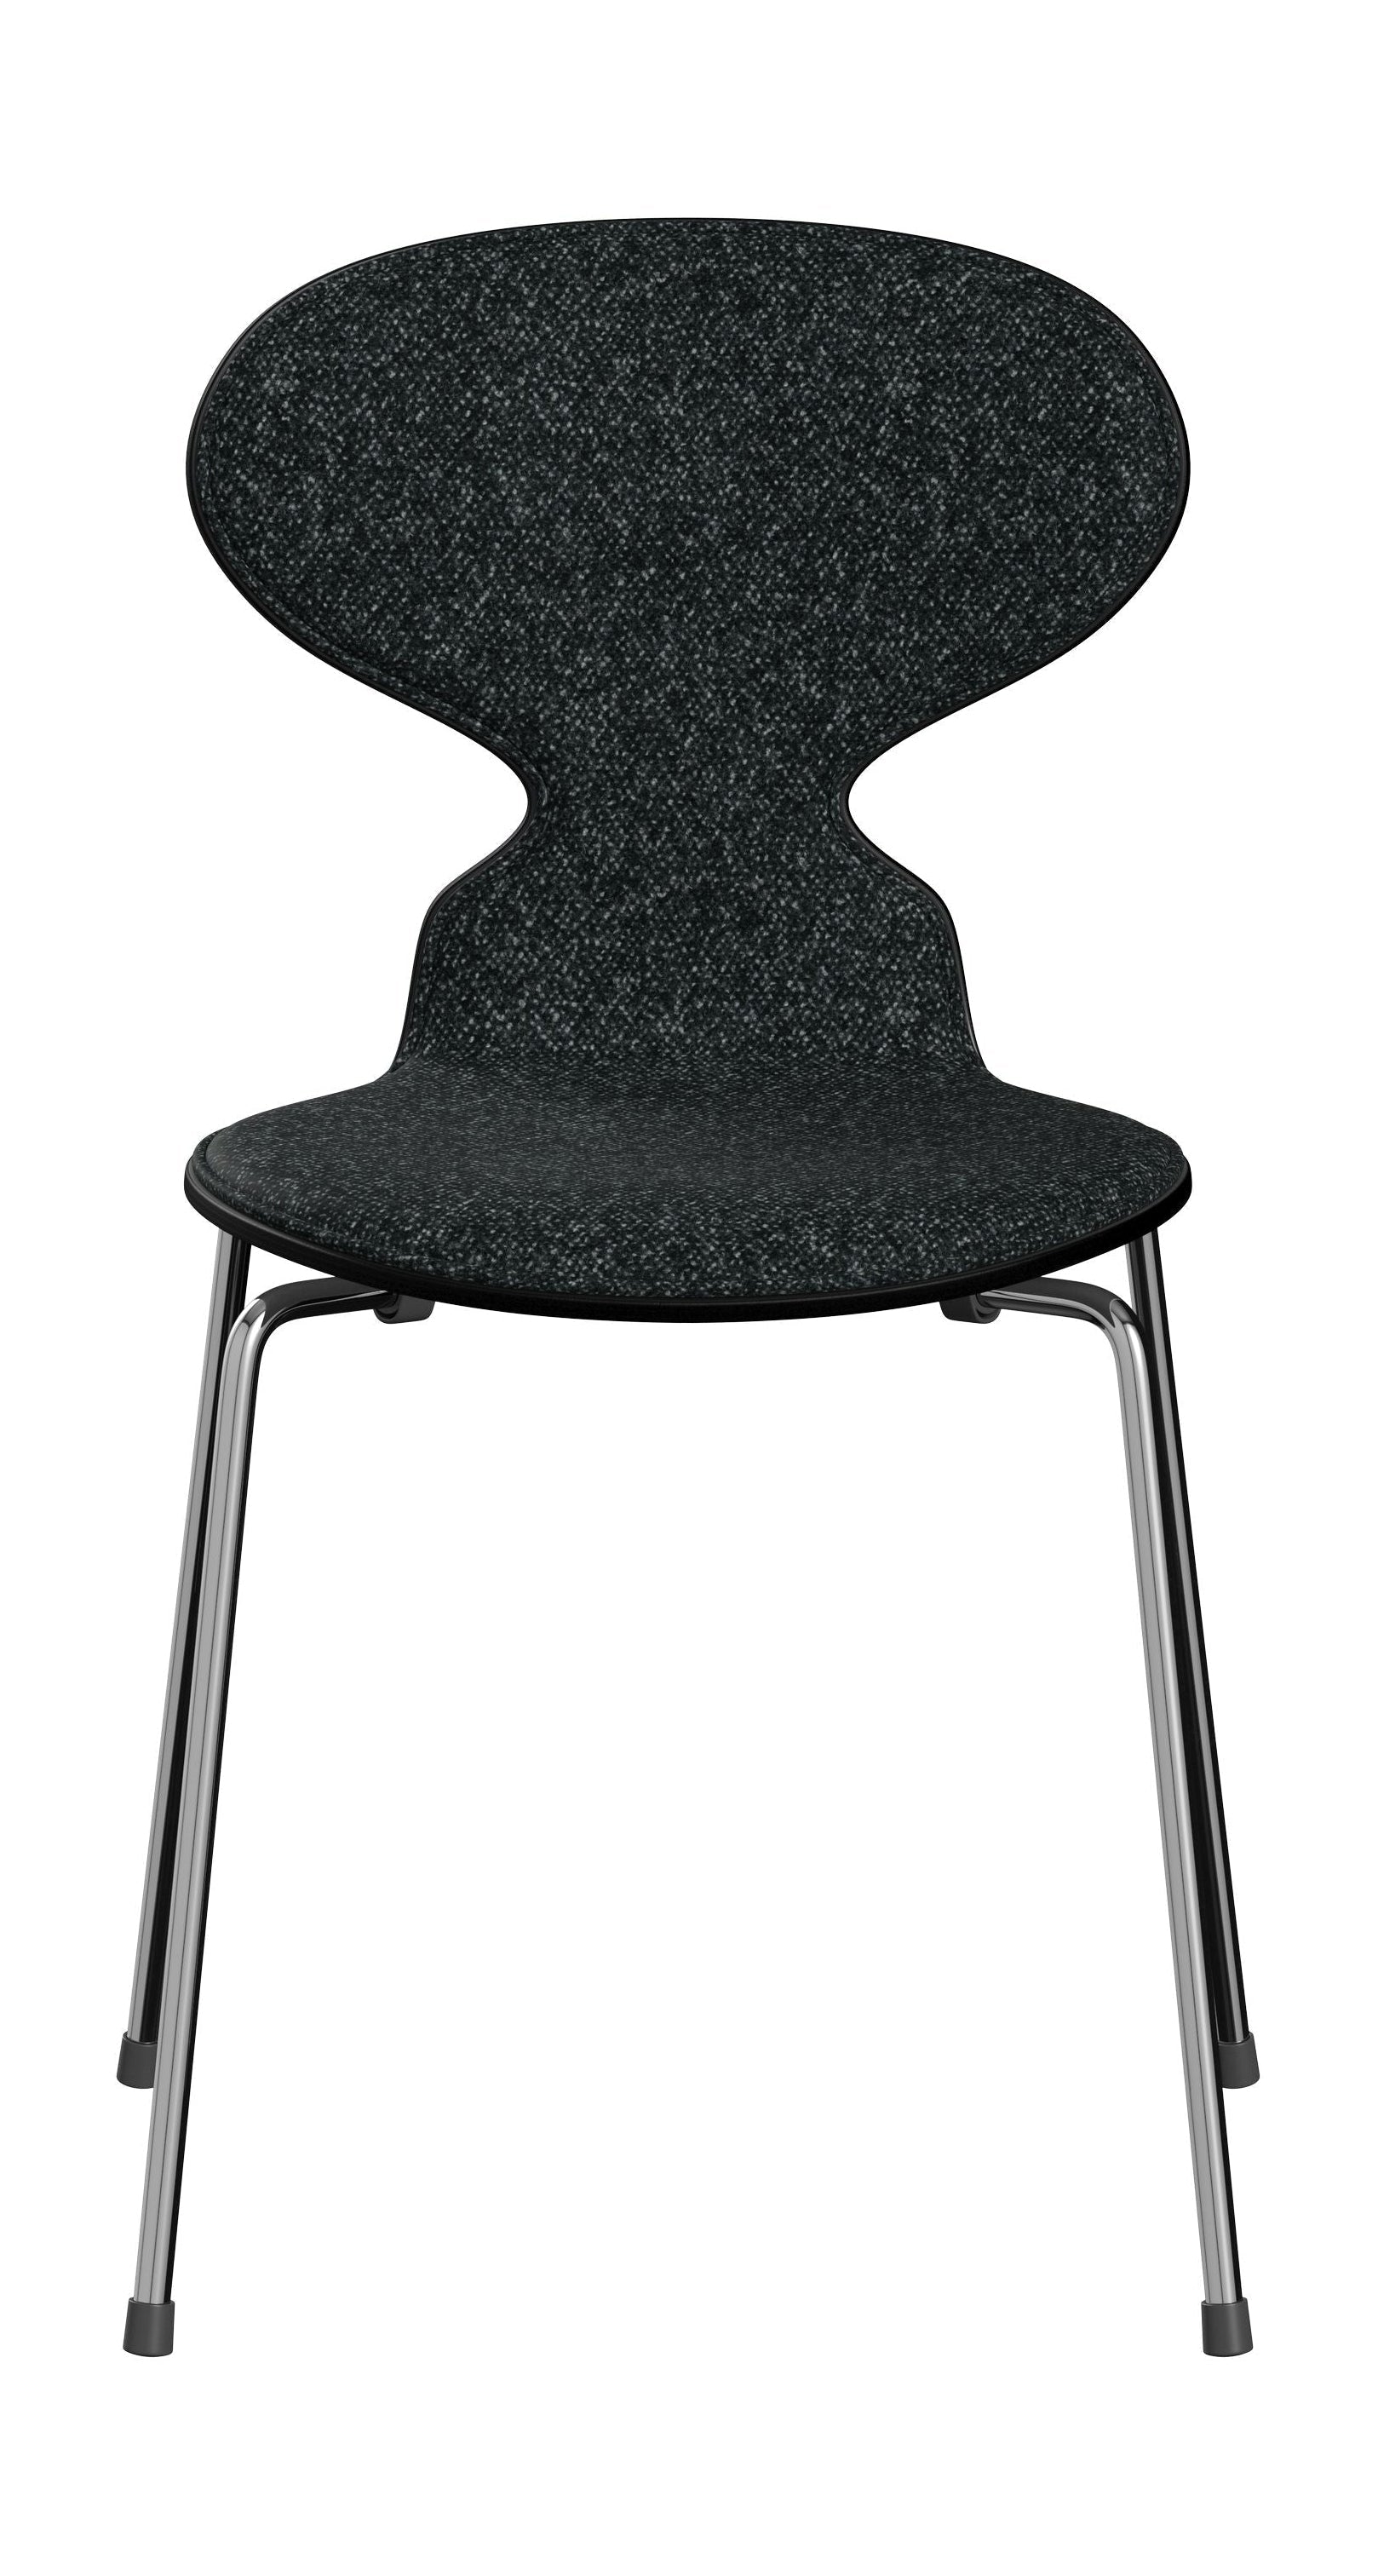 Fritz Hansen 3101 chaise fourmi avant rembourré, coquille: placage coloré noir, rembourrage: vanir textile noir / gris, base: acier / chrome